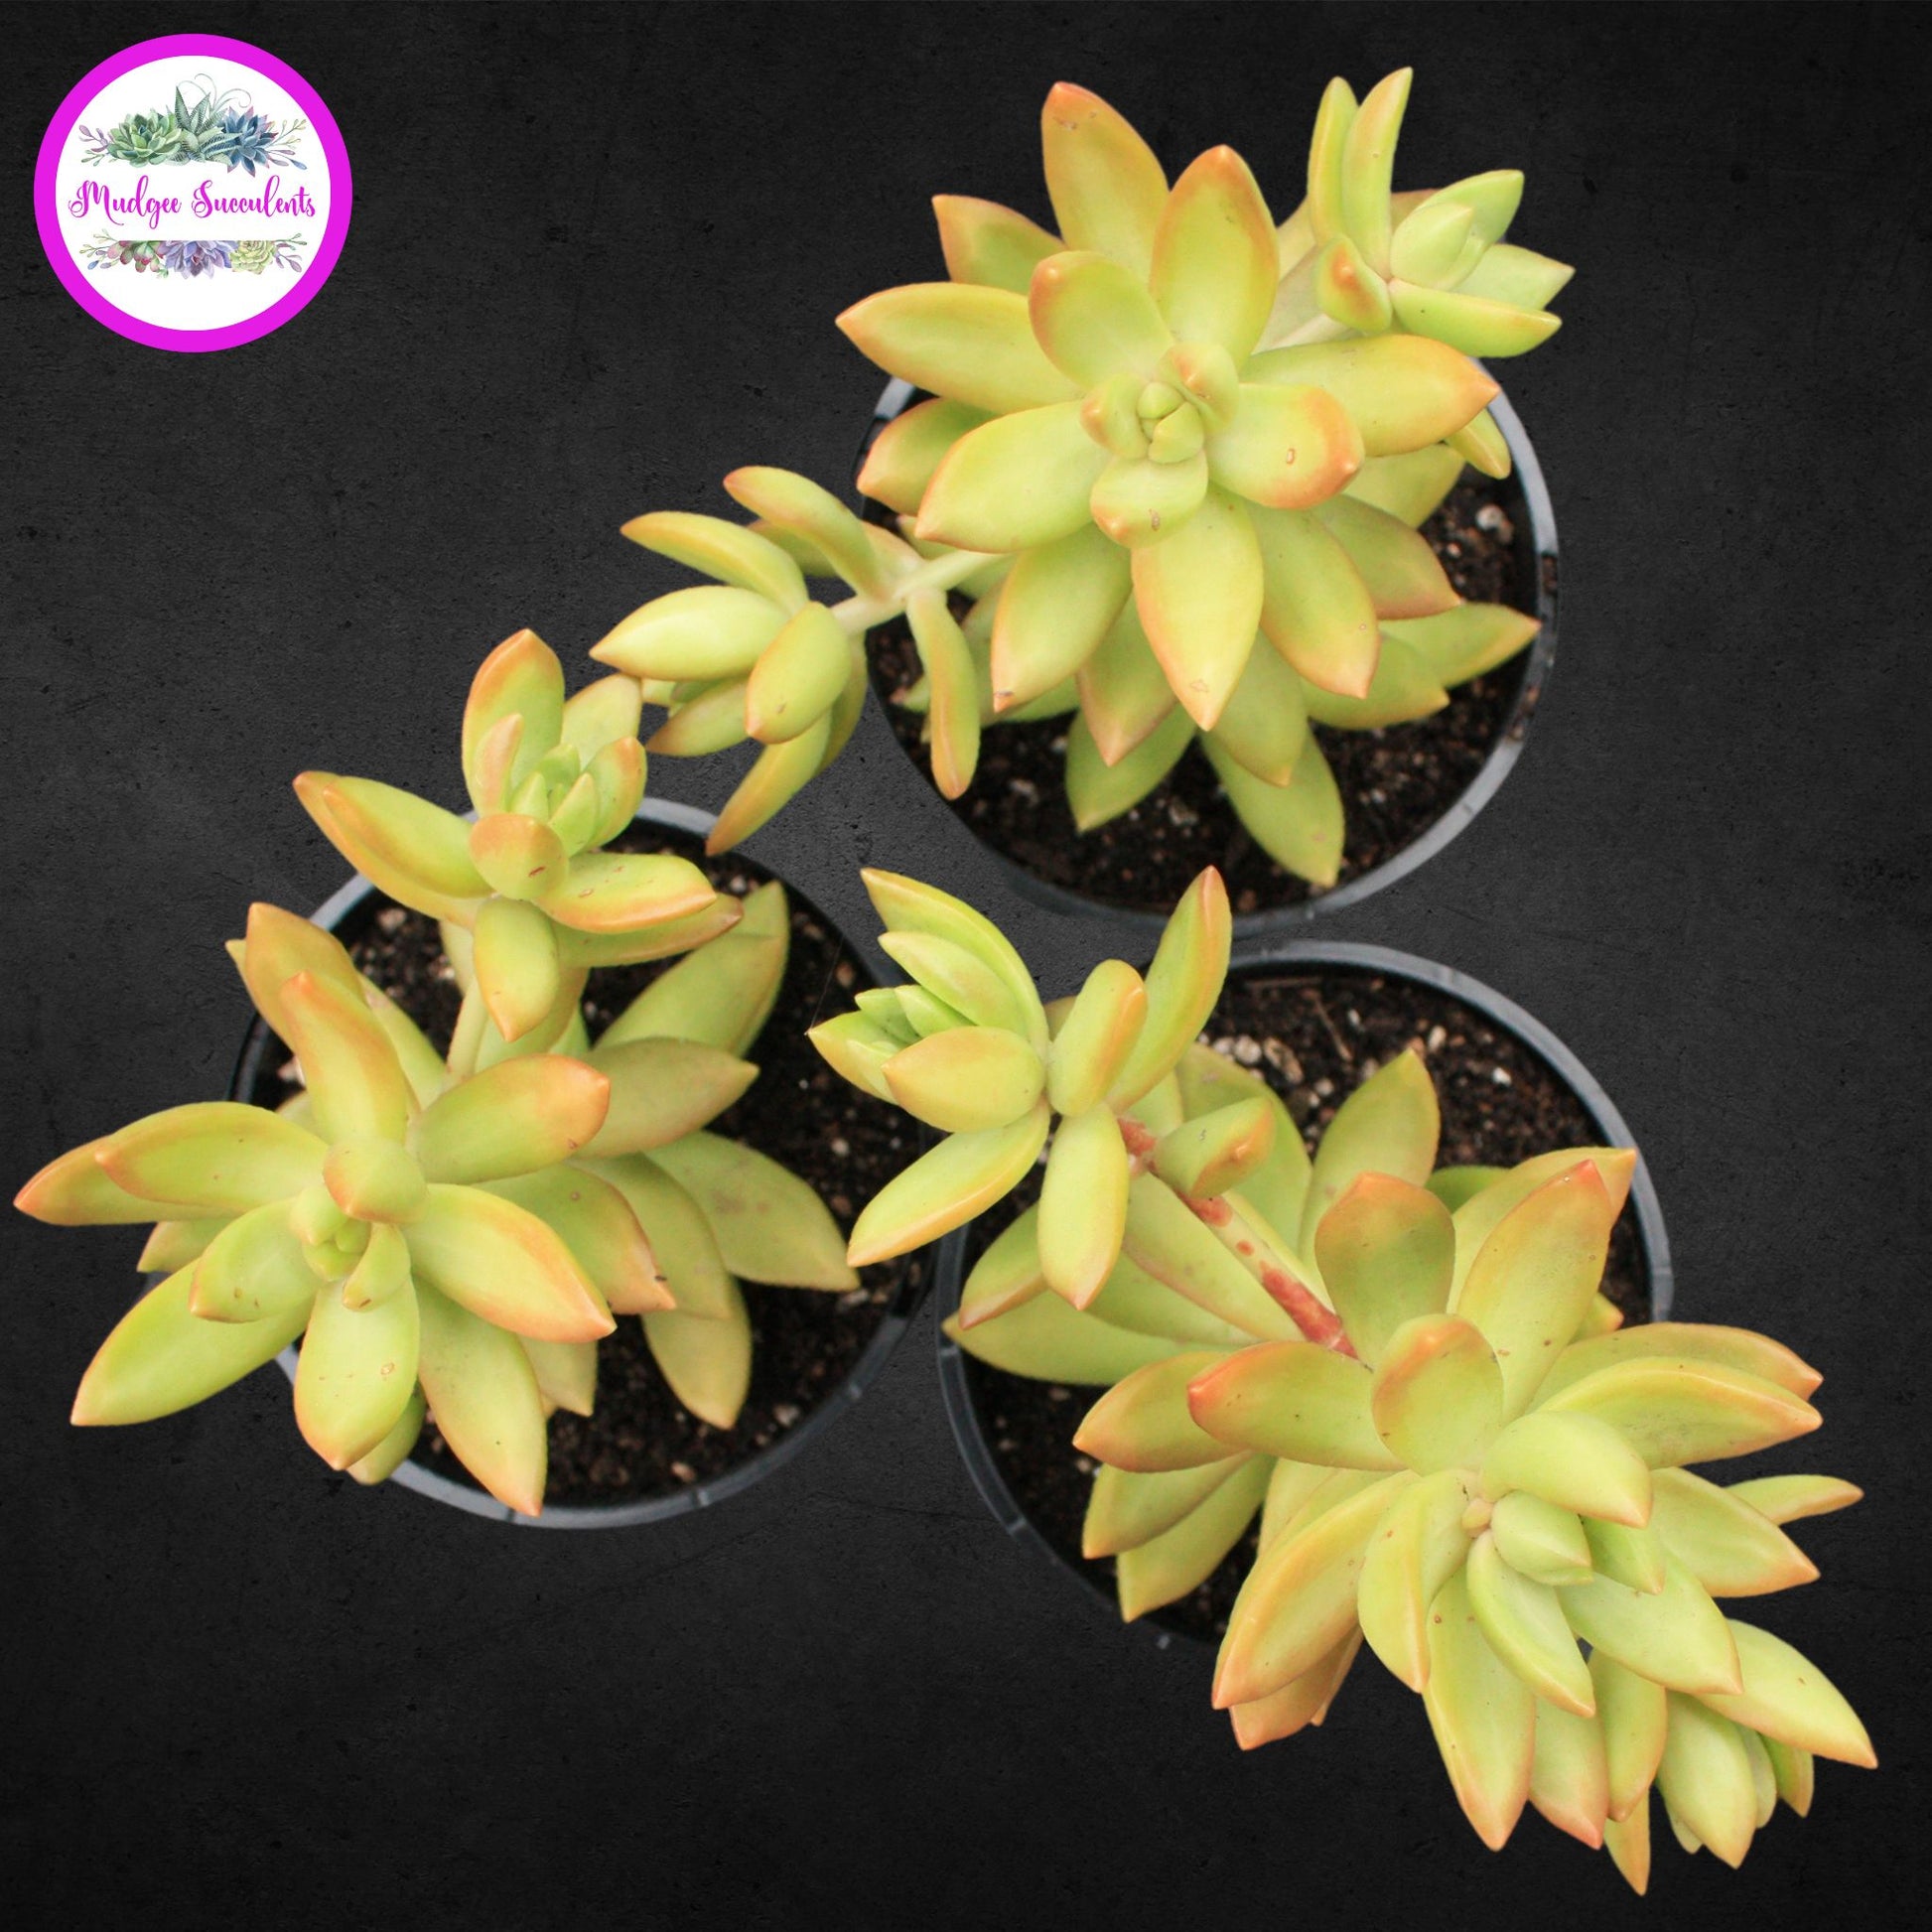 Succulent Plants - Sedum adolphi - Mudgee Succulents Online Shop